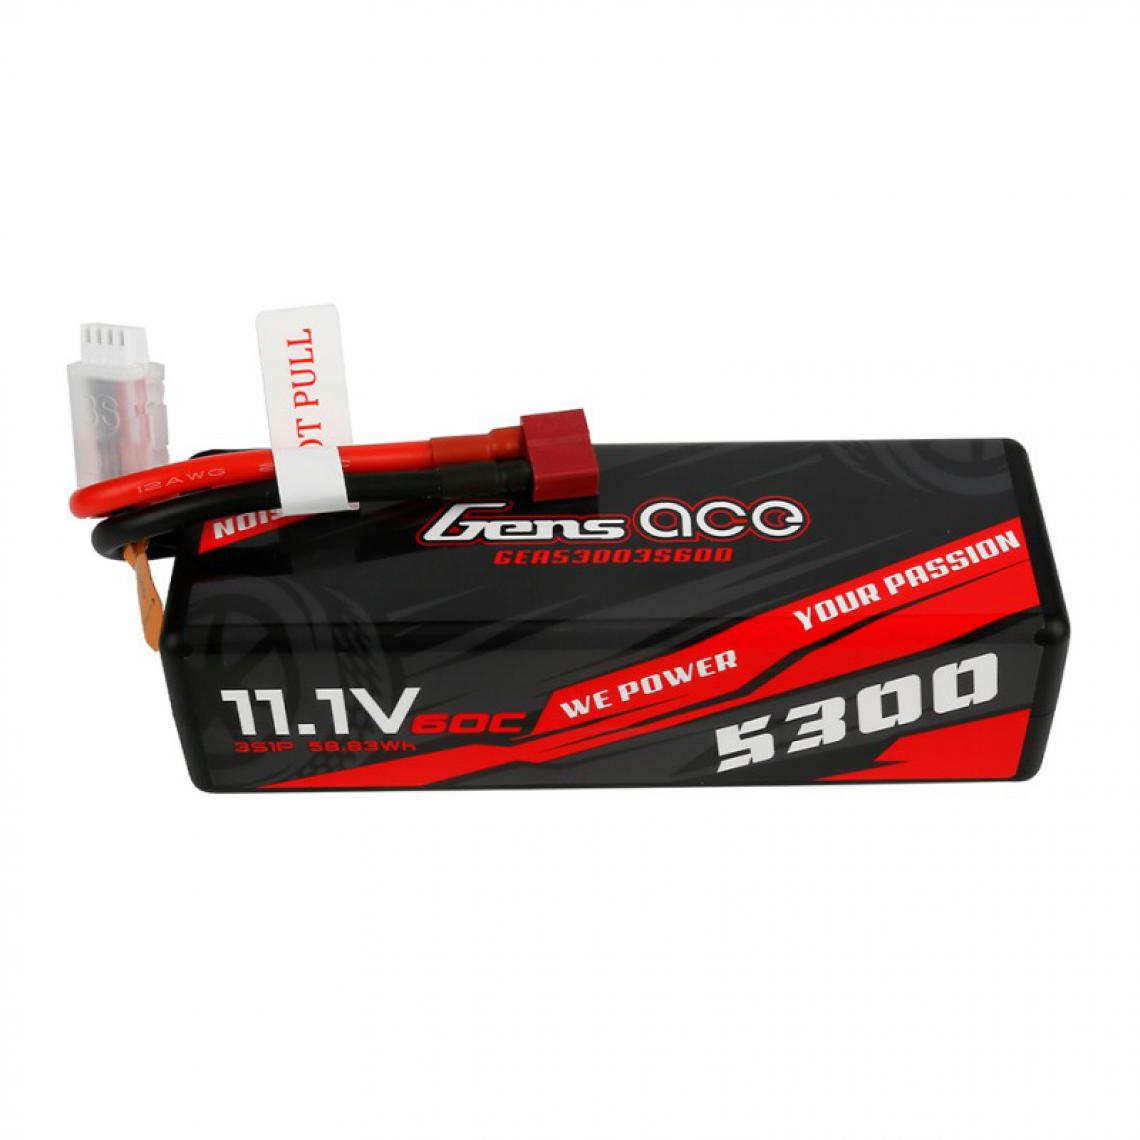 Gens Ace - Gensace Accu Lipo 5300mAh 11.1V 3S 60C - Batteries et chargeurs